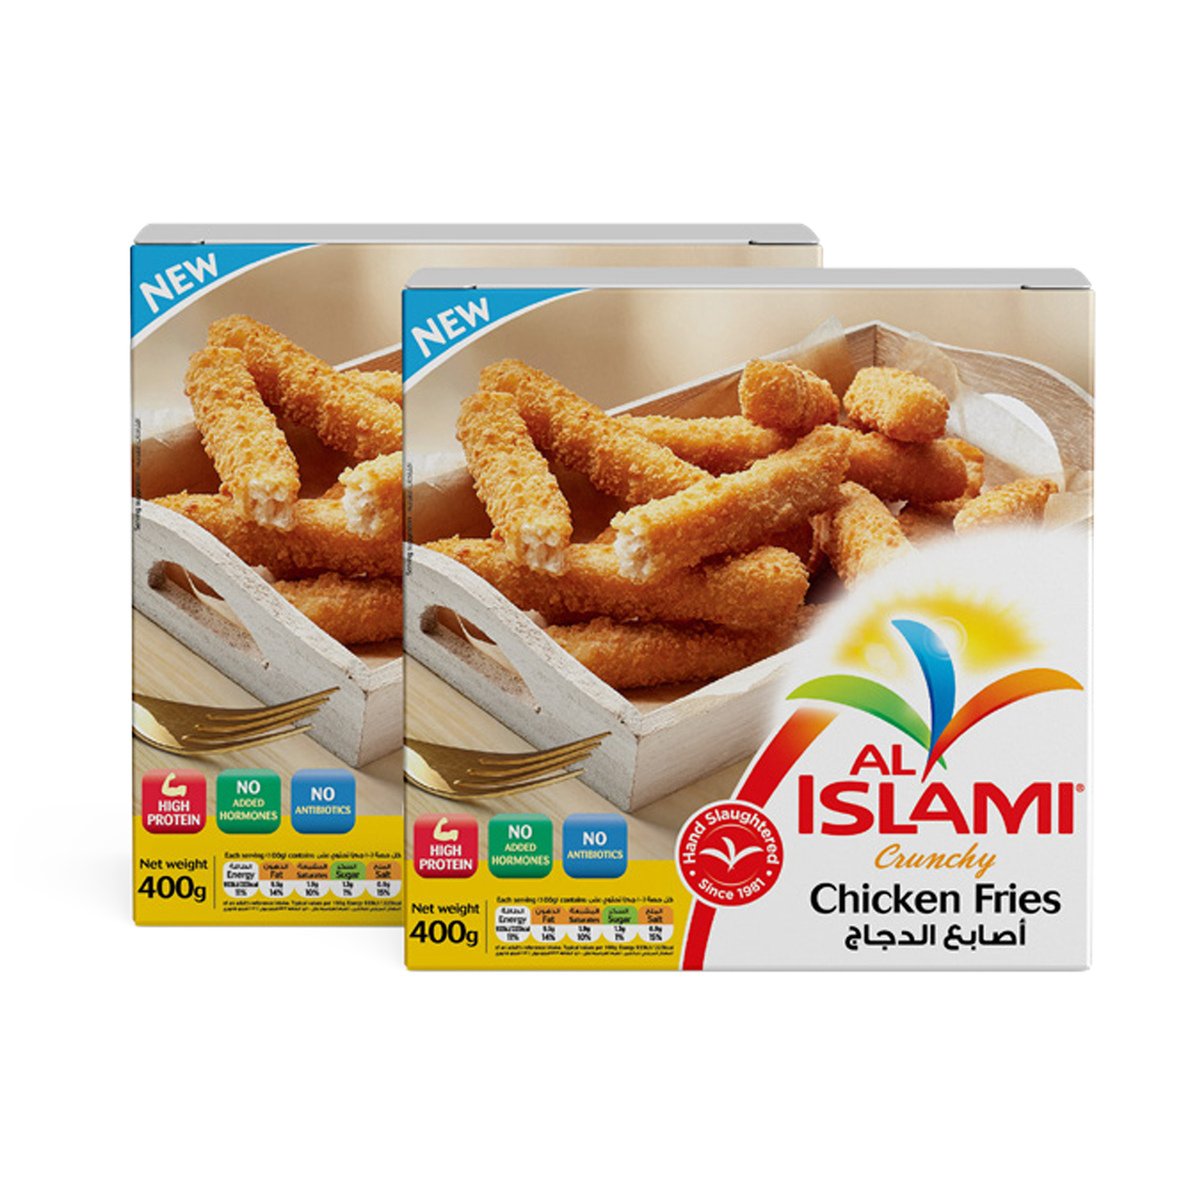 Al Islami Crunchy Chicken Fries 2 x 400 g